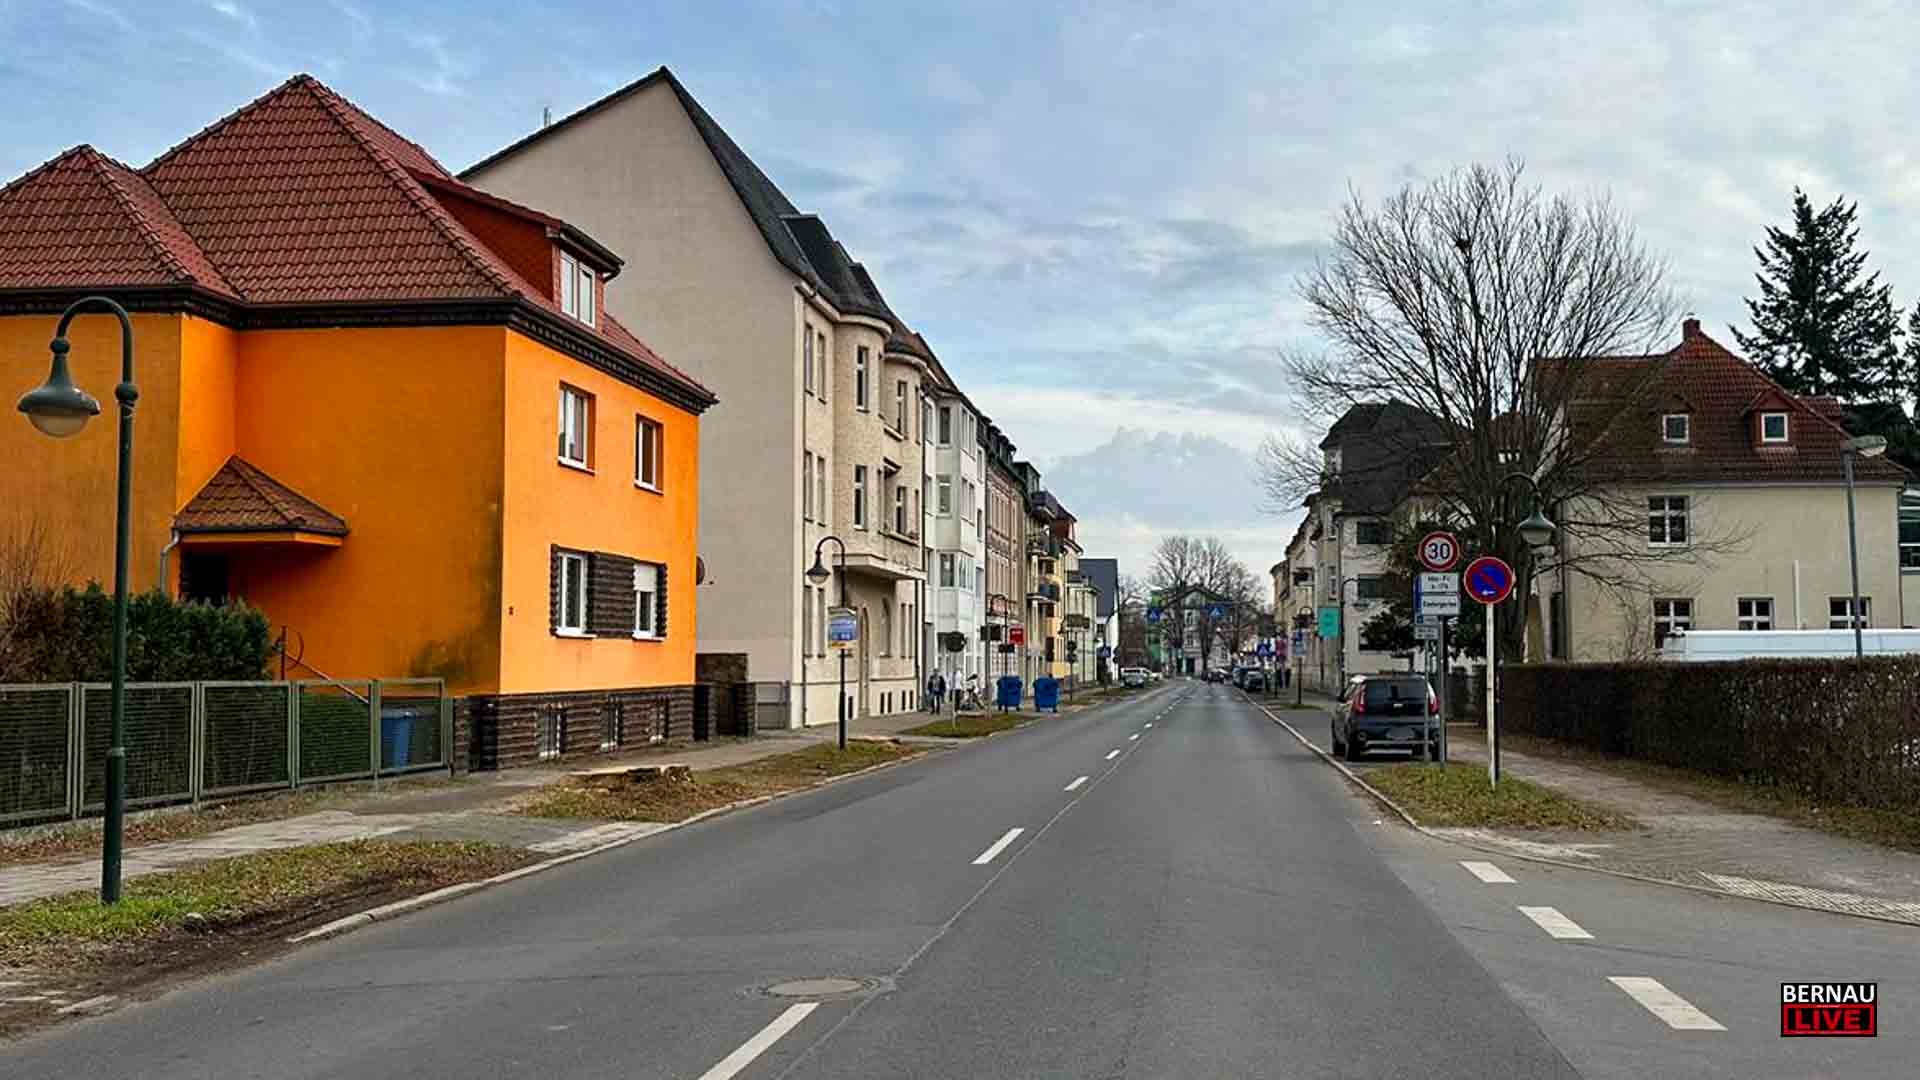 Bernau: Kopfsteinpflaster in der August-Bebel-Straße - ein wenig Nostalgie